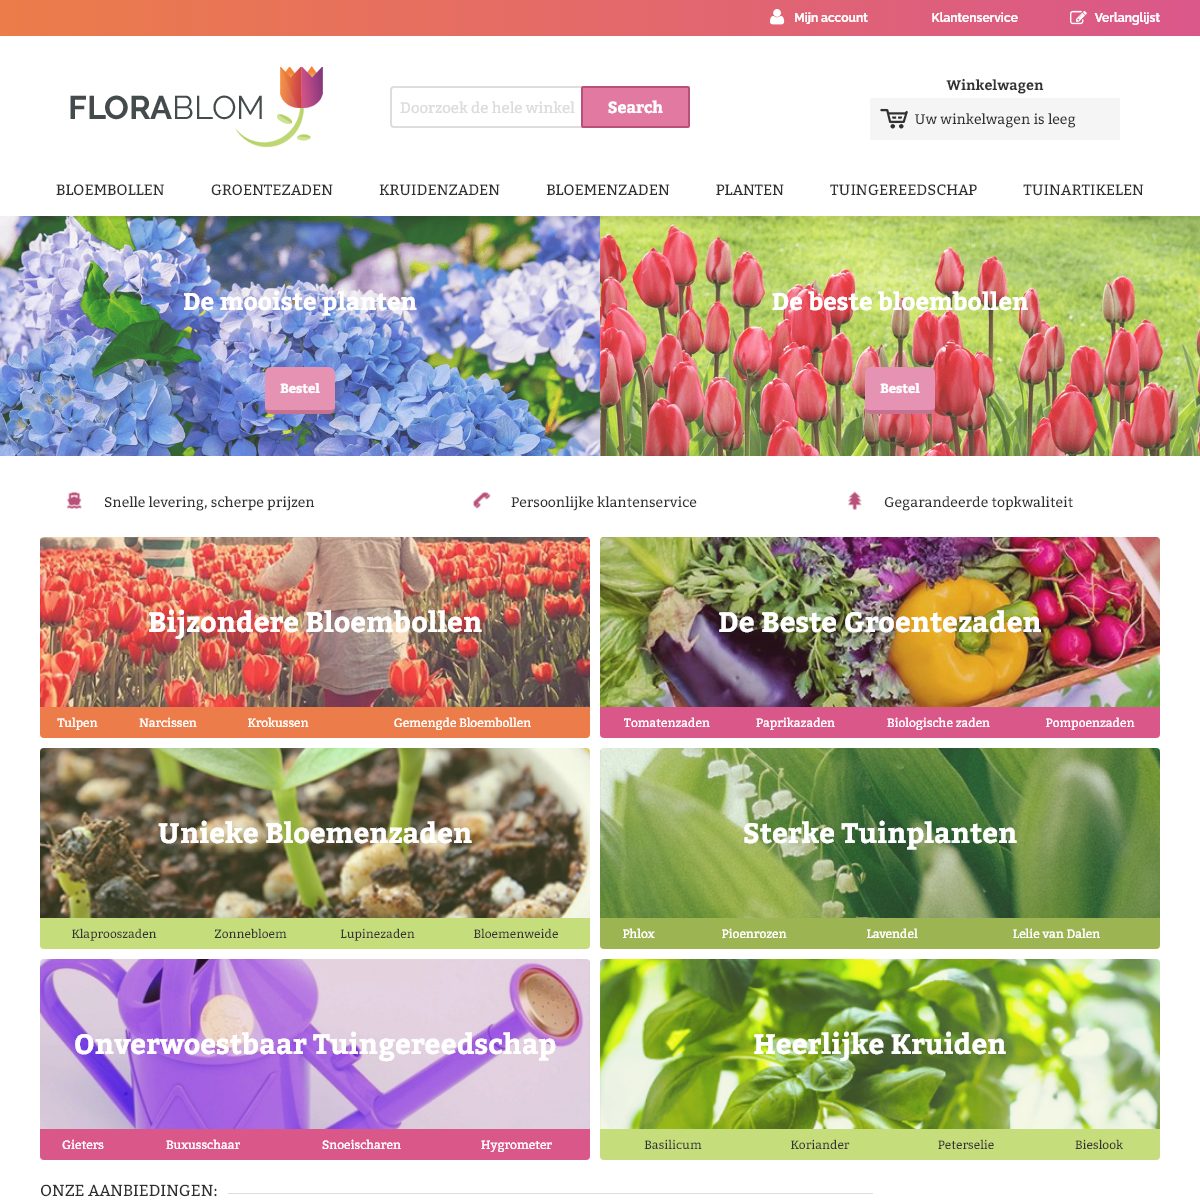 A complete backup of florablom.com